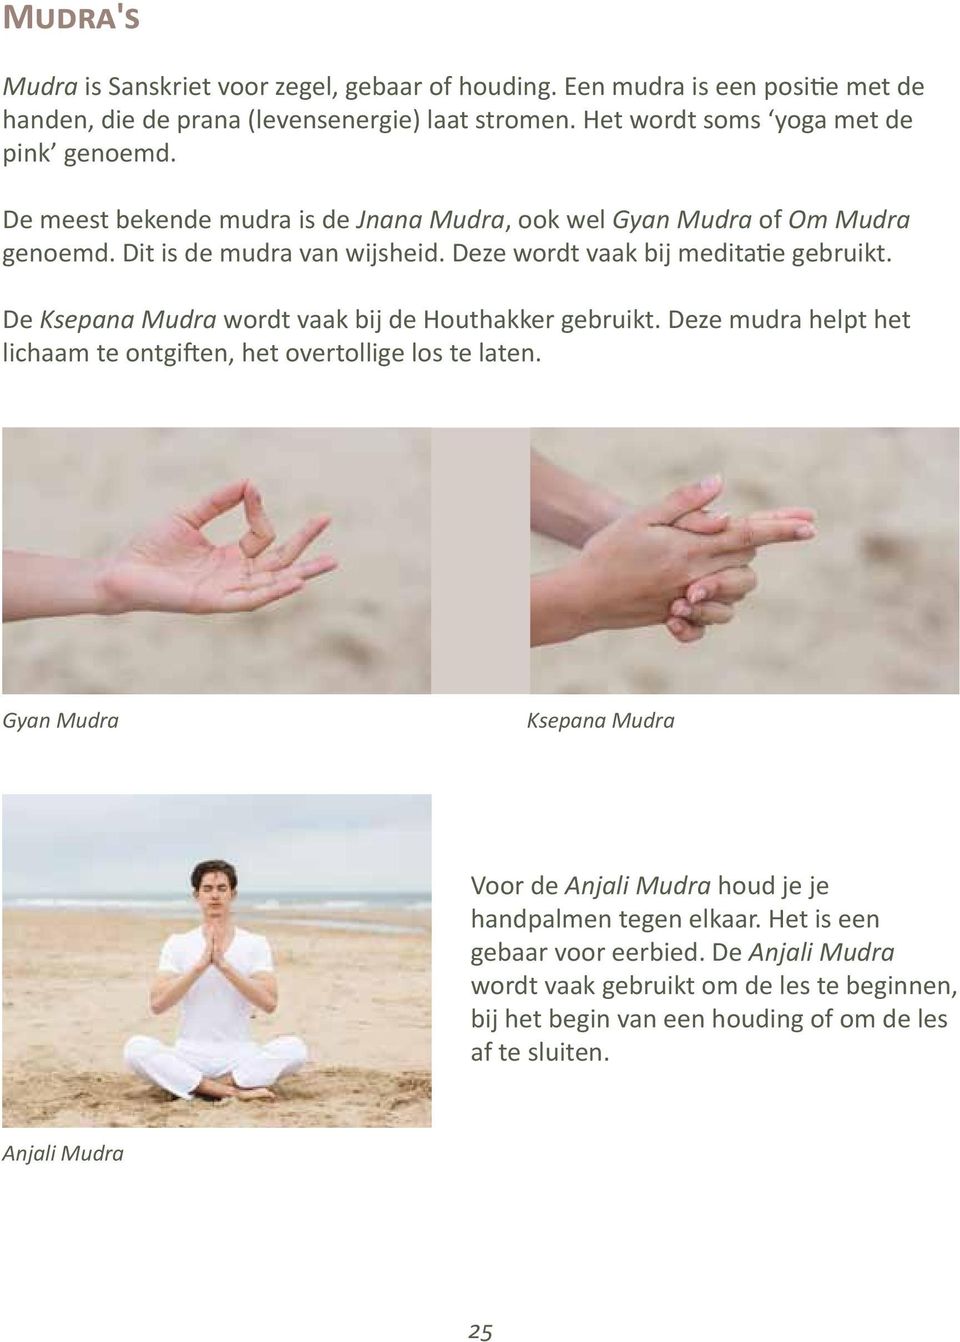 Deze wordt vaak bij meditatie gebruikt. De Ksepana Mudra wordt vaak bij de Houthakker gebruikt. Deze mudra helpt het lichaam te ontgiften, het overtollige los te laten.